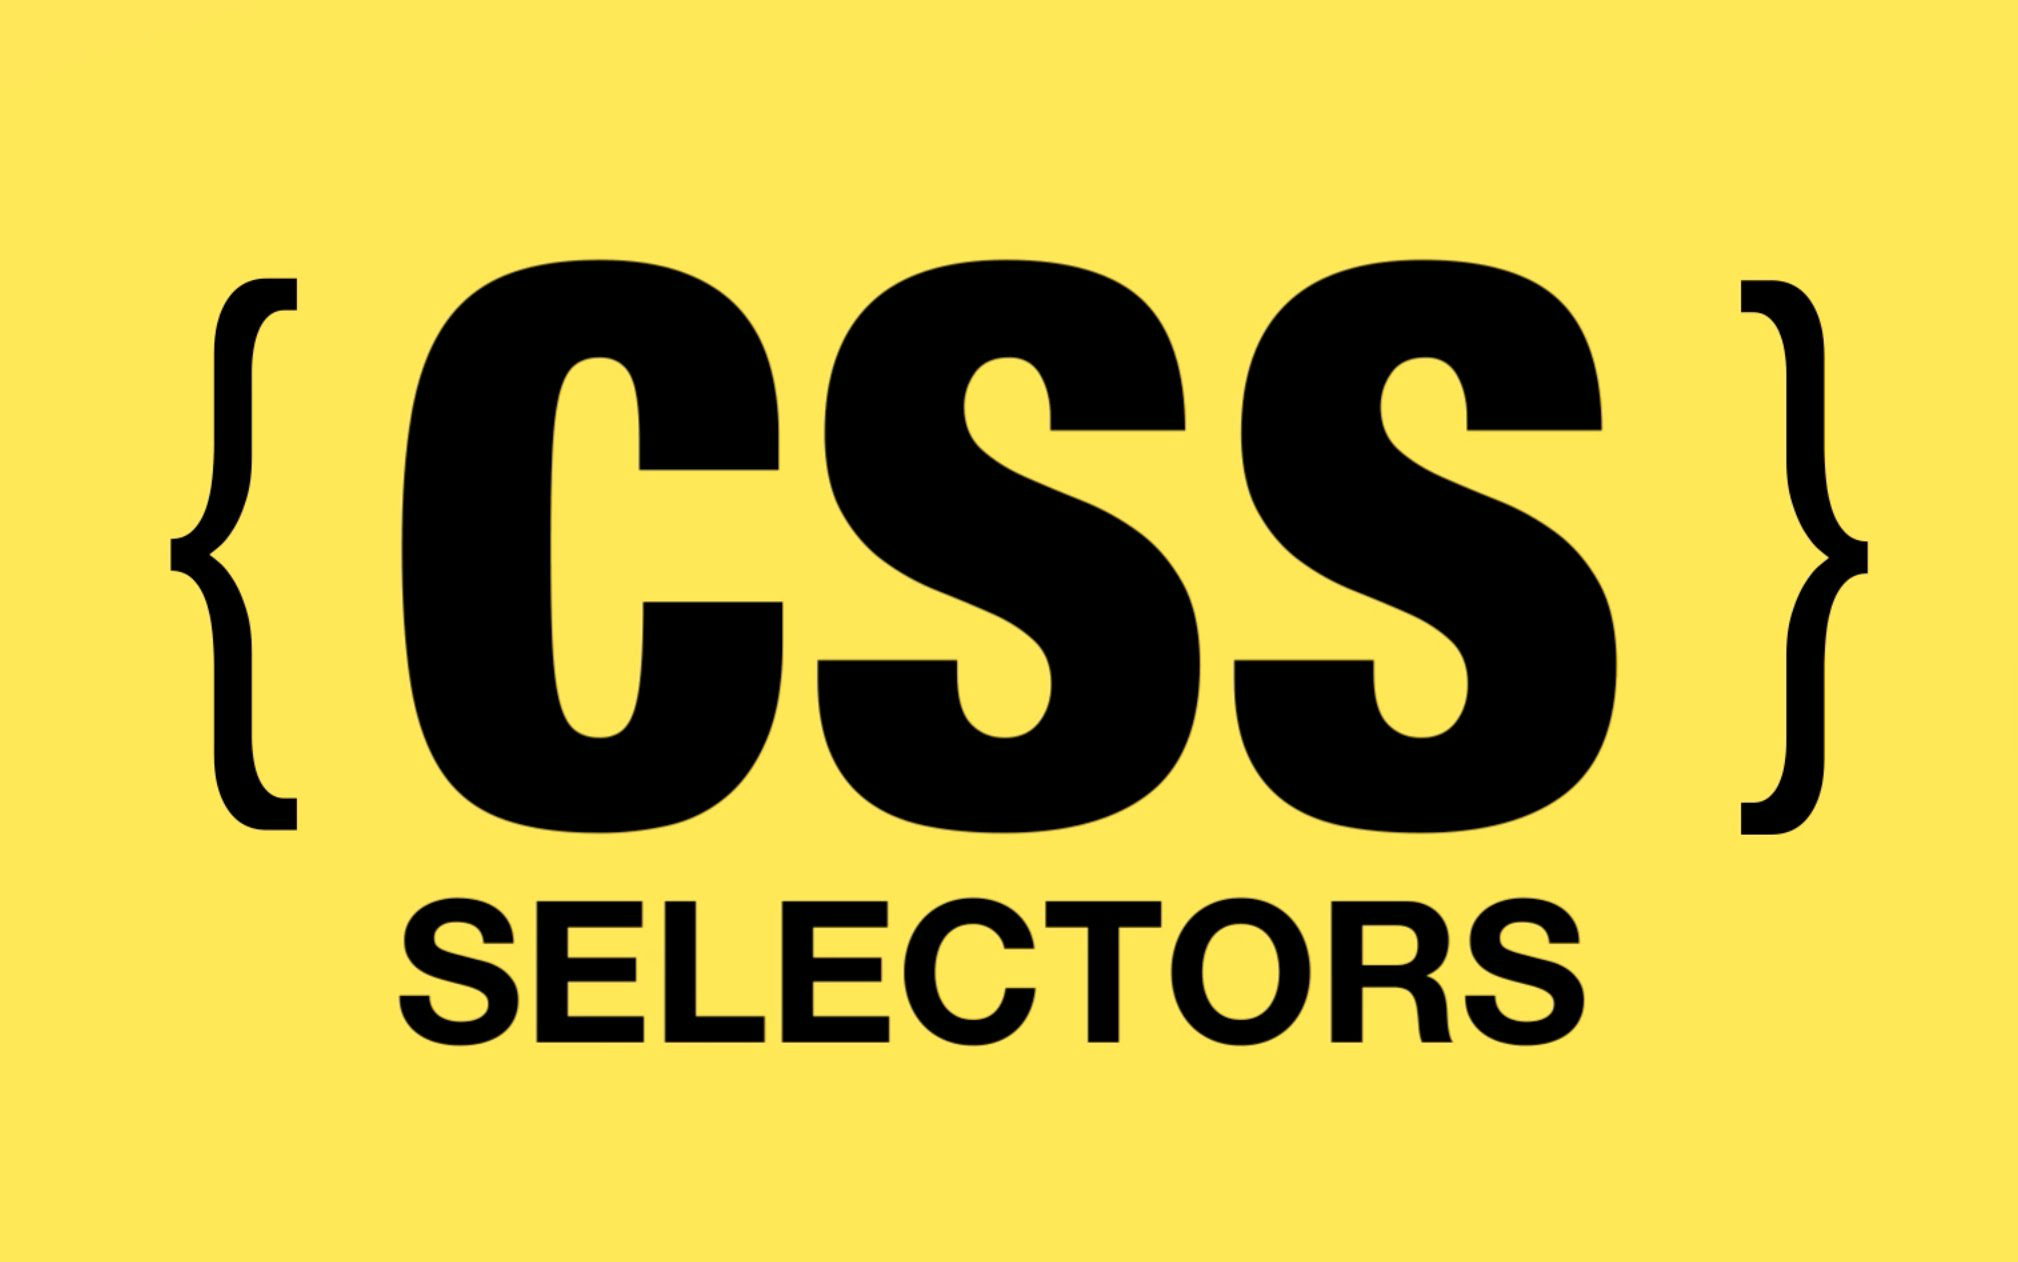 爬虫开发系列视频教程(CSS选择器)